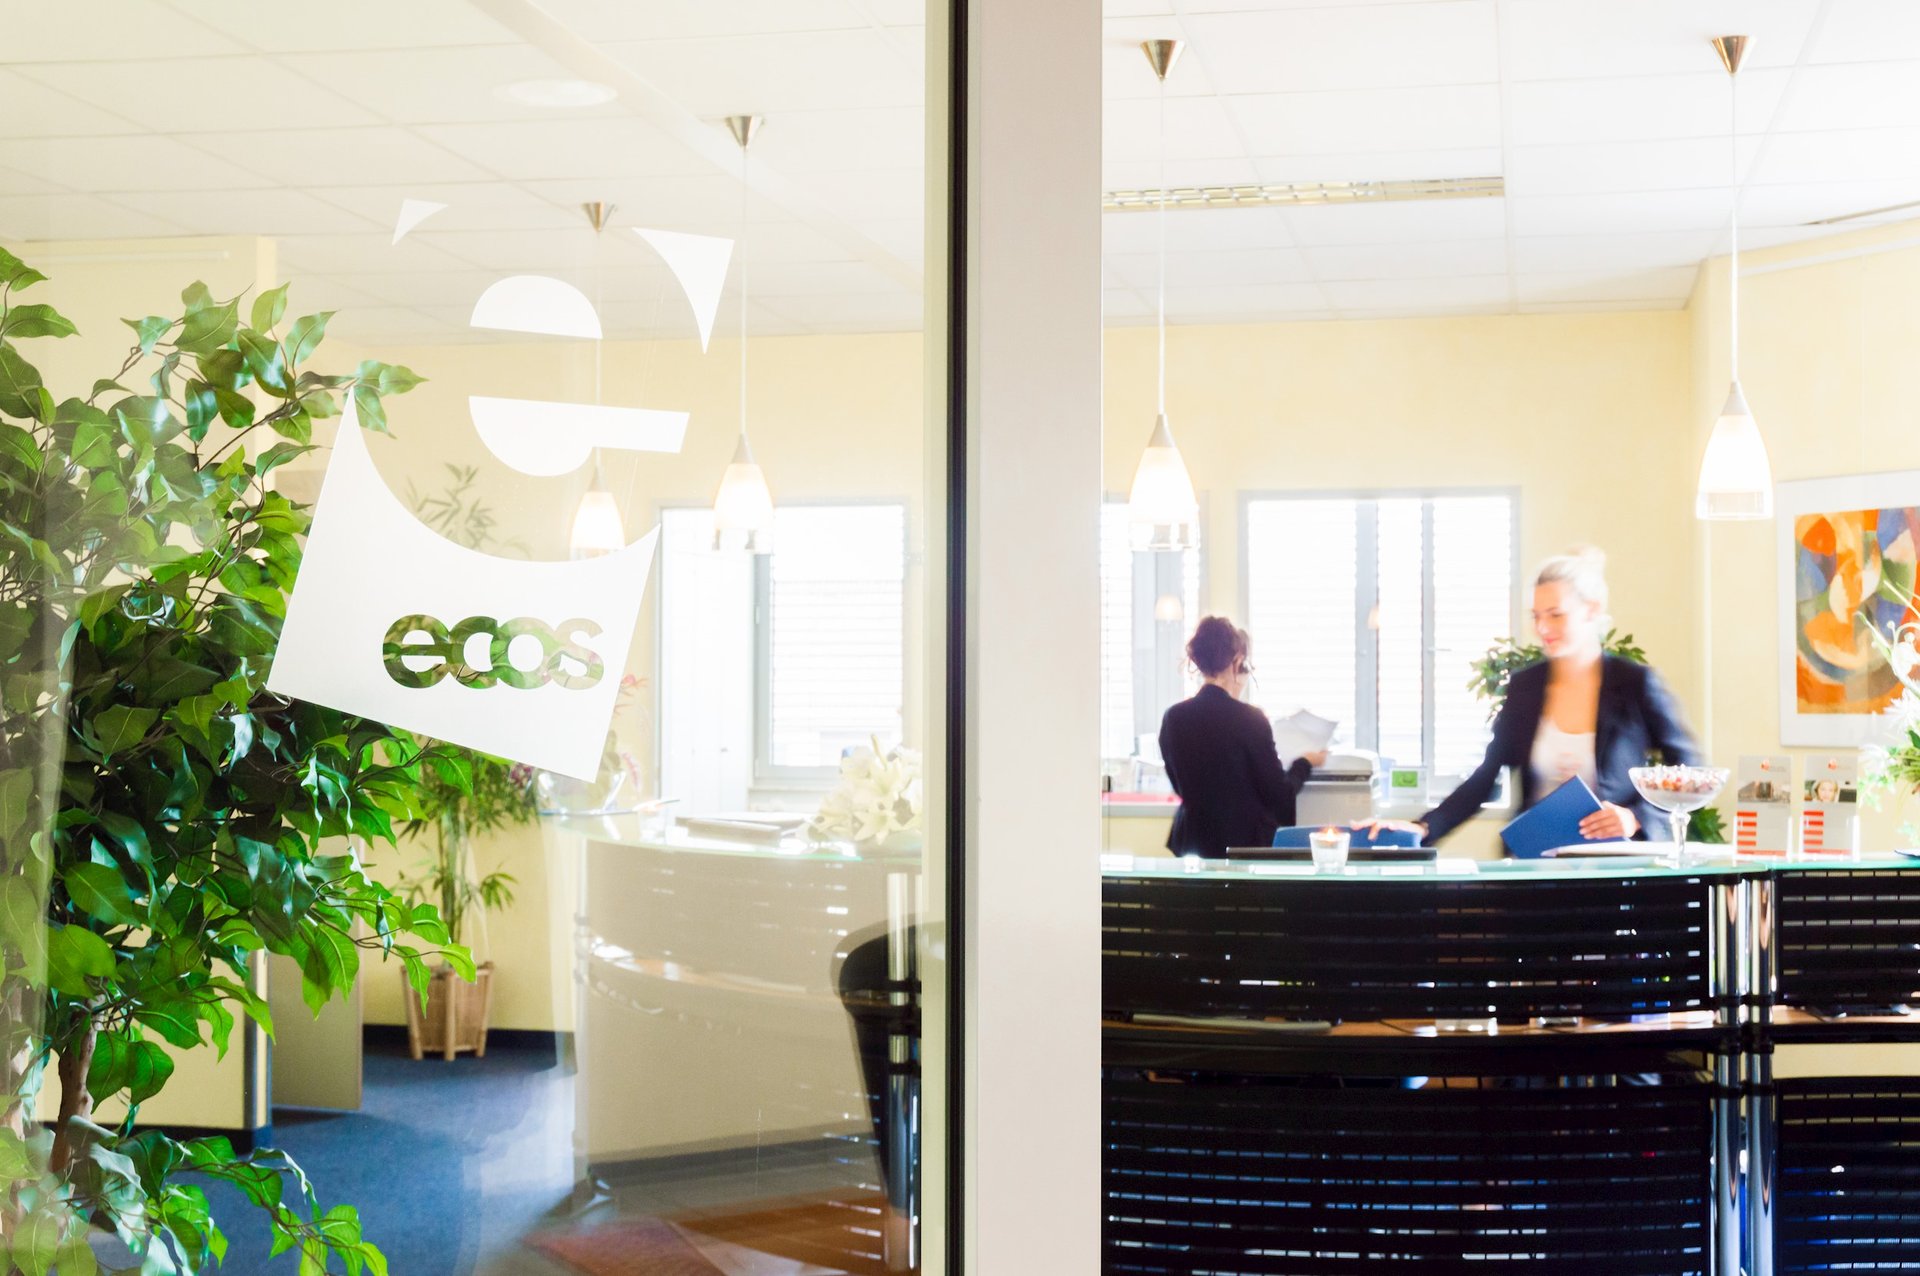 ecos office center hannover-süd beltere